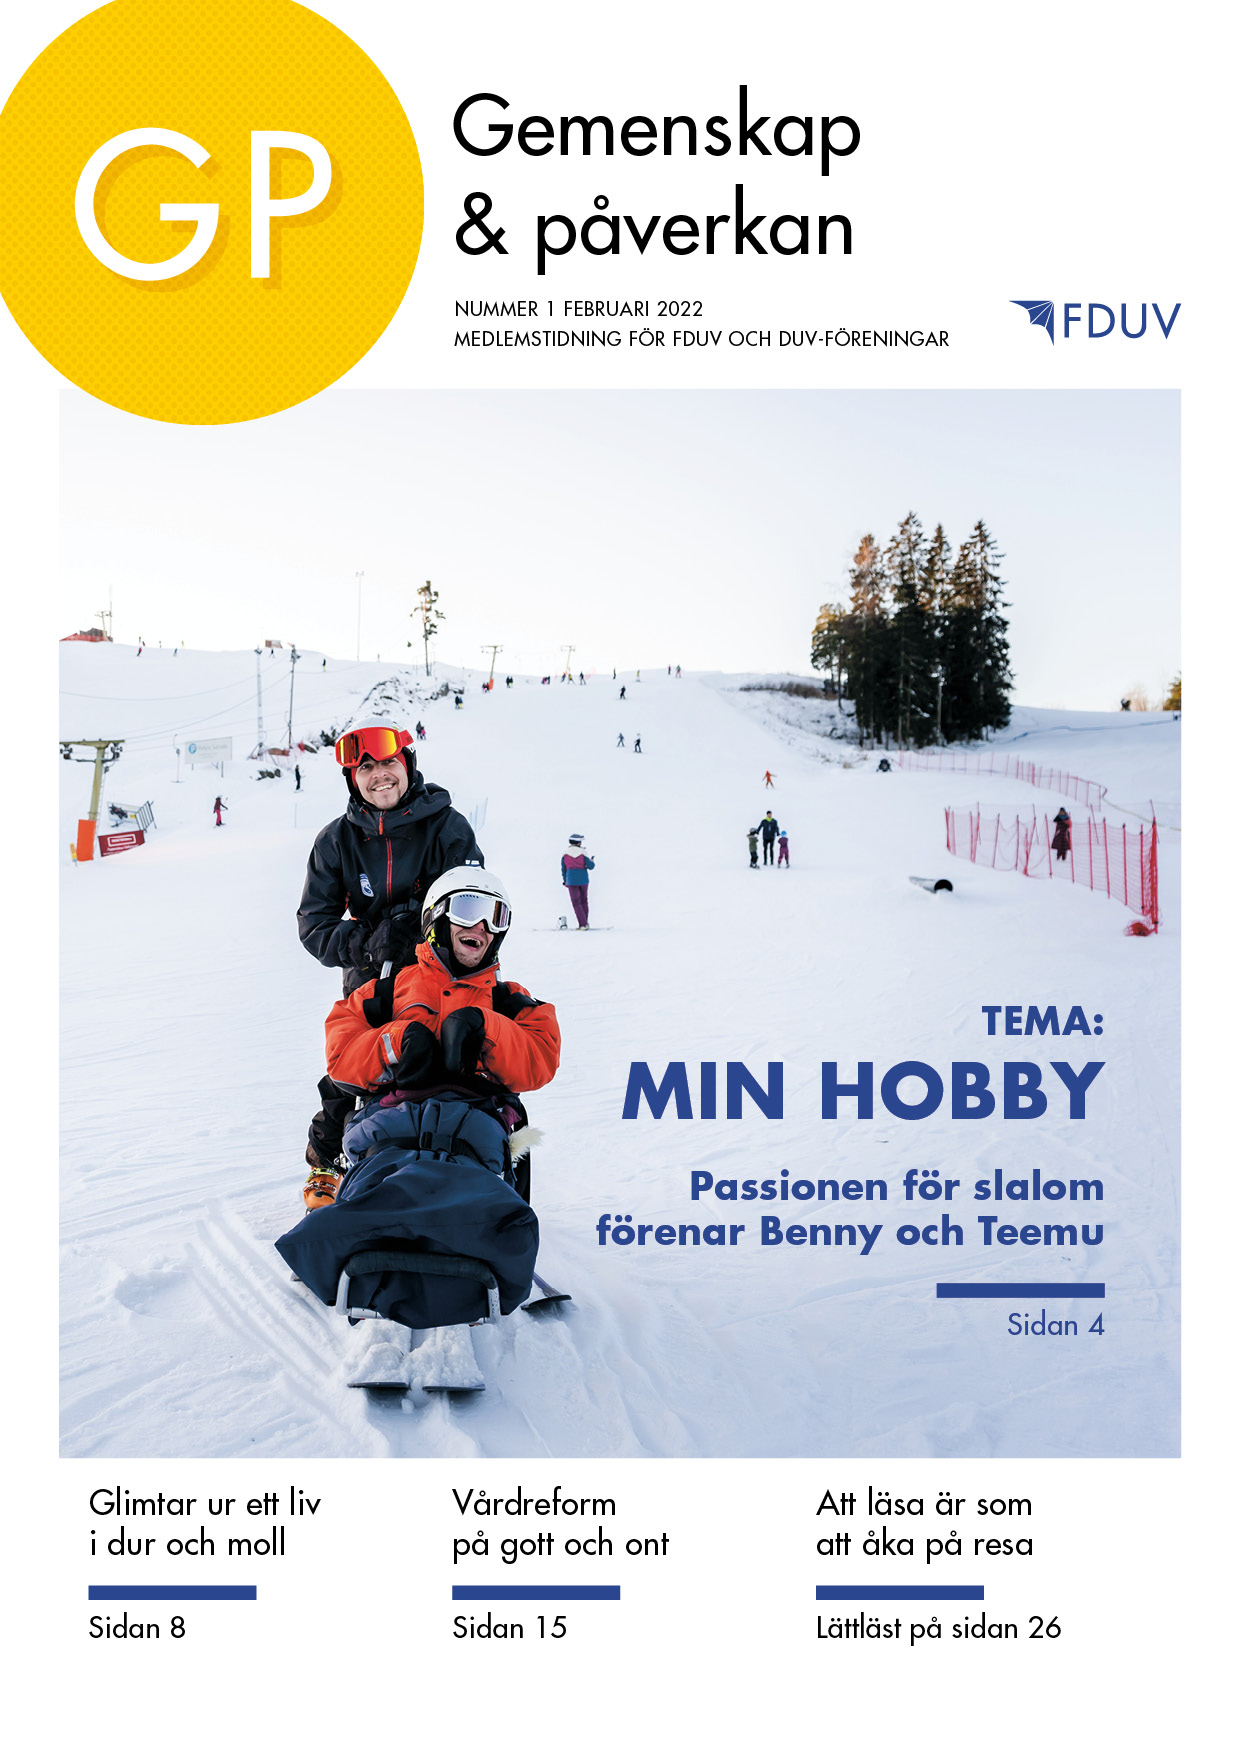 GP 1/2022 tema: min hobby, på pärmen foto på person som åker slalomkälke.